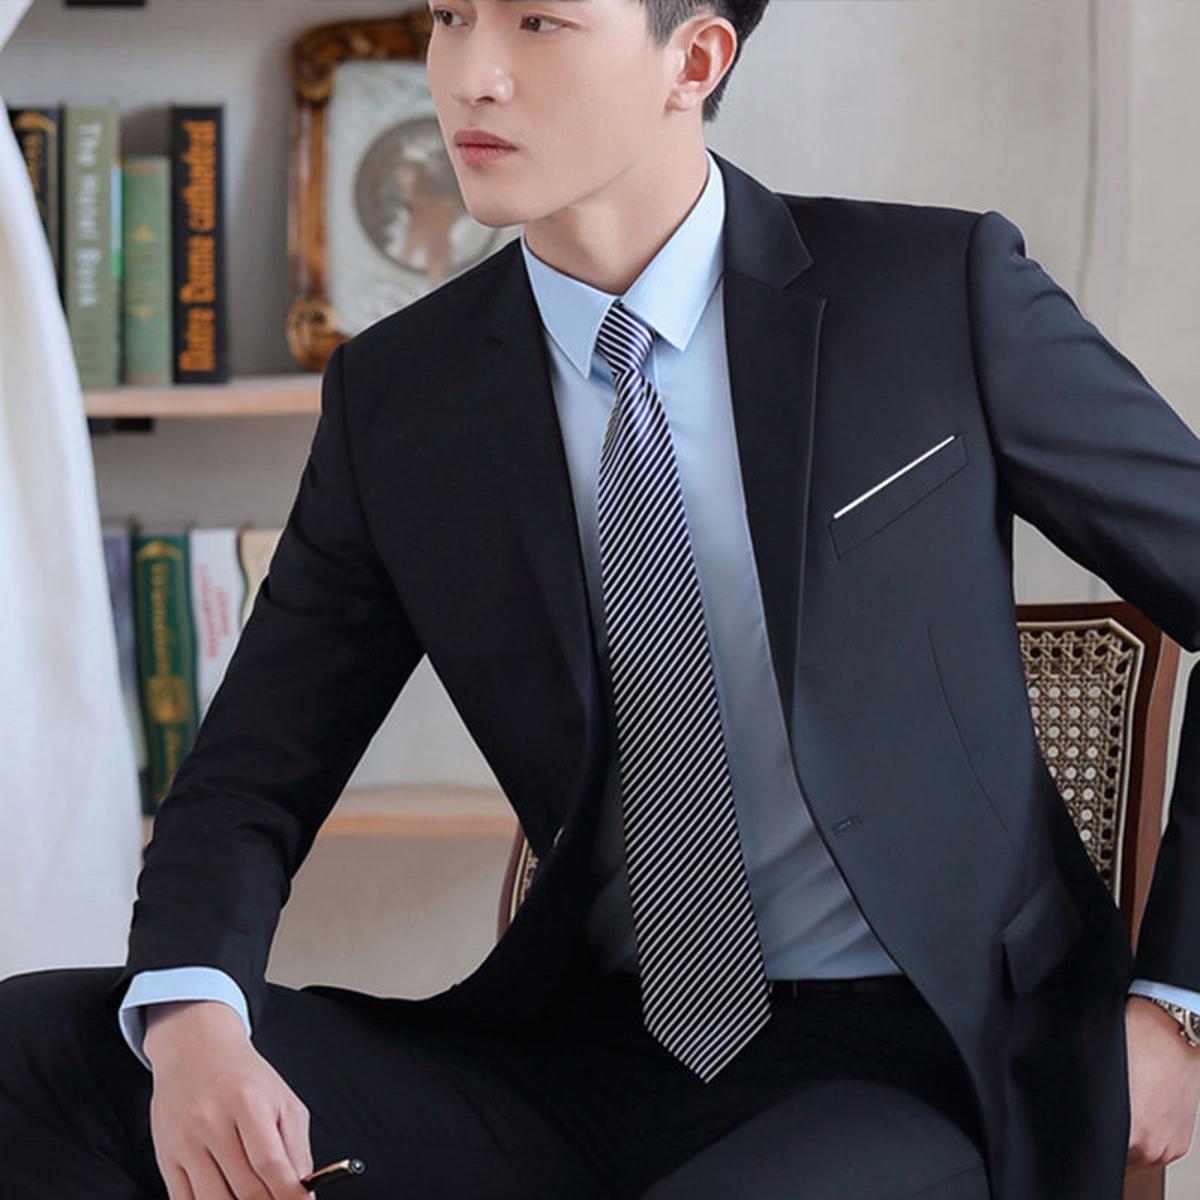 Suit Suit Men's Business Slim Fit Small Business Suit Coat Leisure  Professional Formal Dress Groom